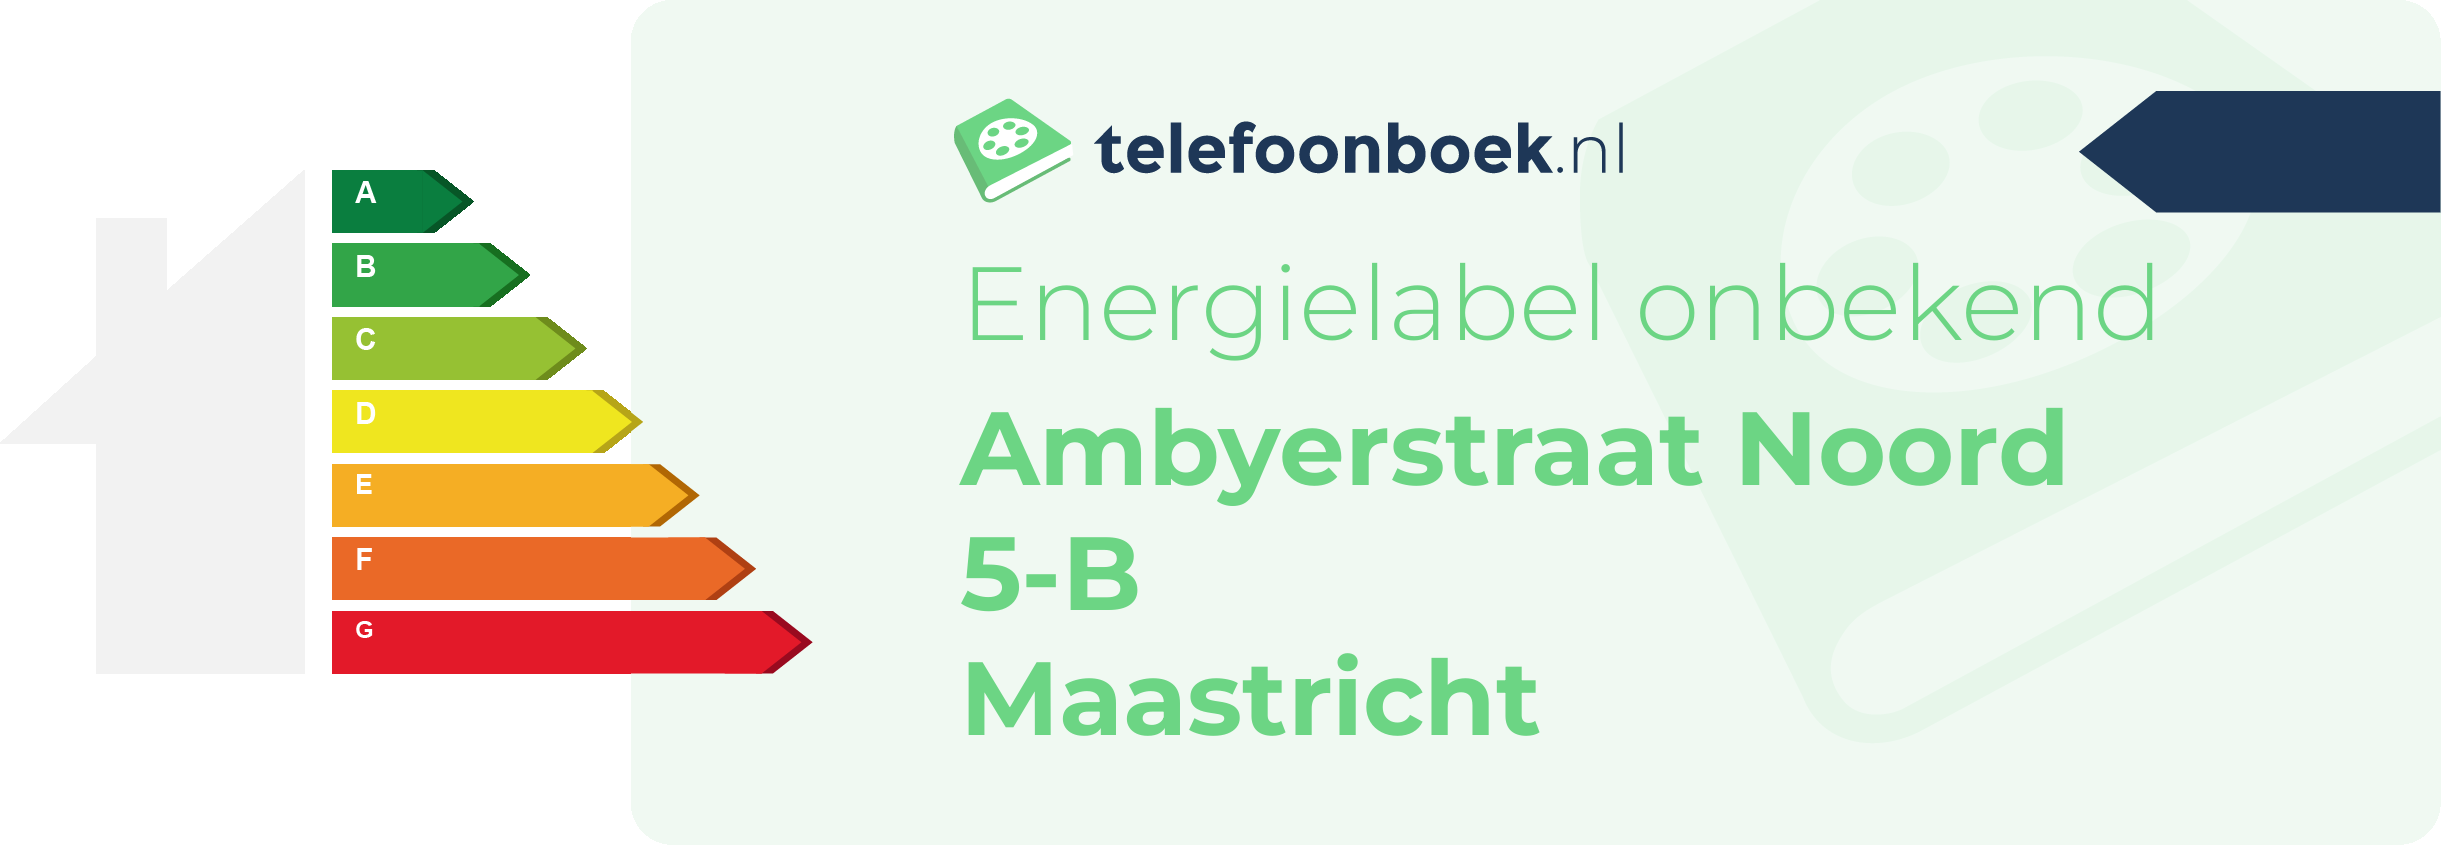 Energielabel Ambyerstraat Noord 5-B Maastricht